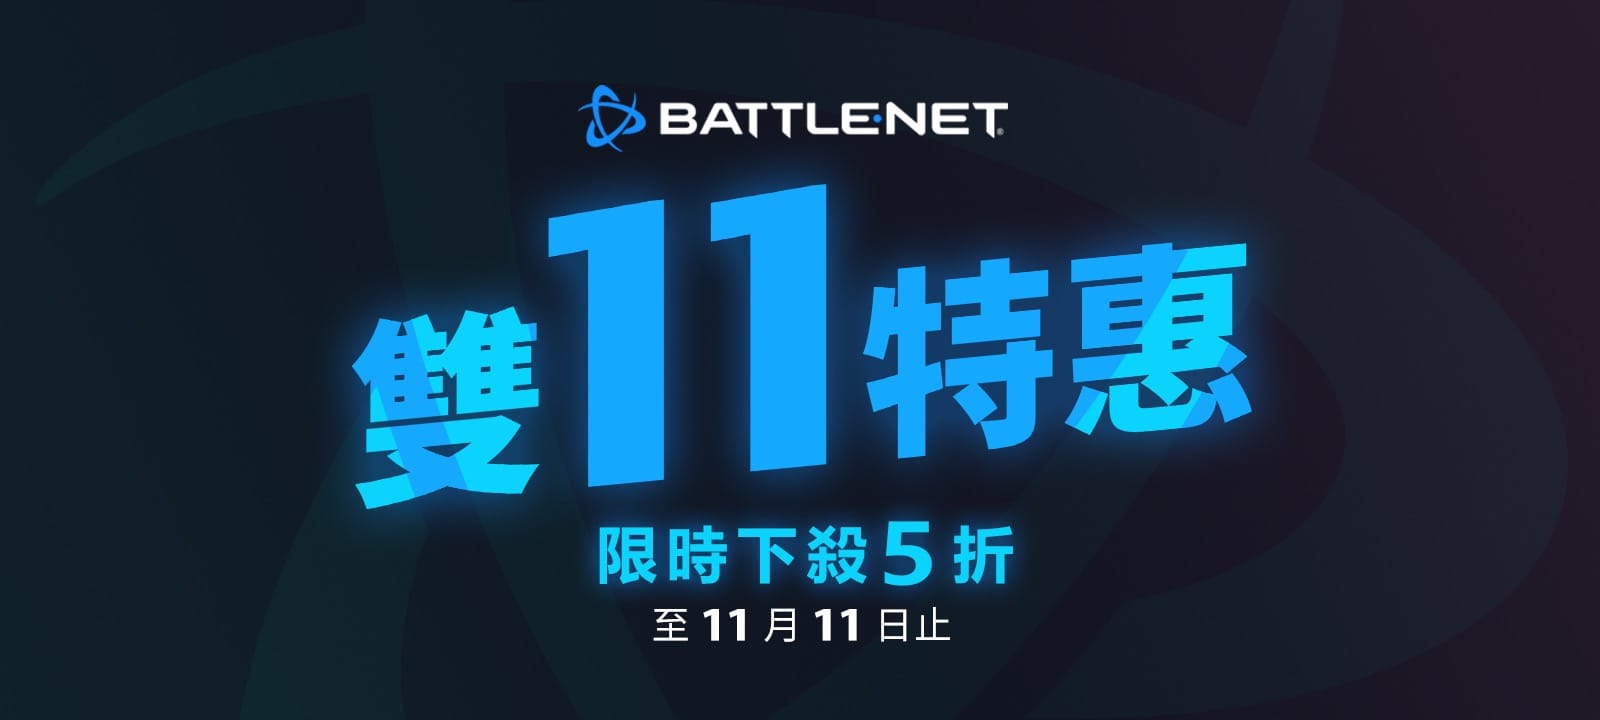 台港澳限定Battle.net雙11特惠開跑   限時下殺5折